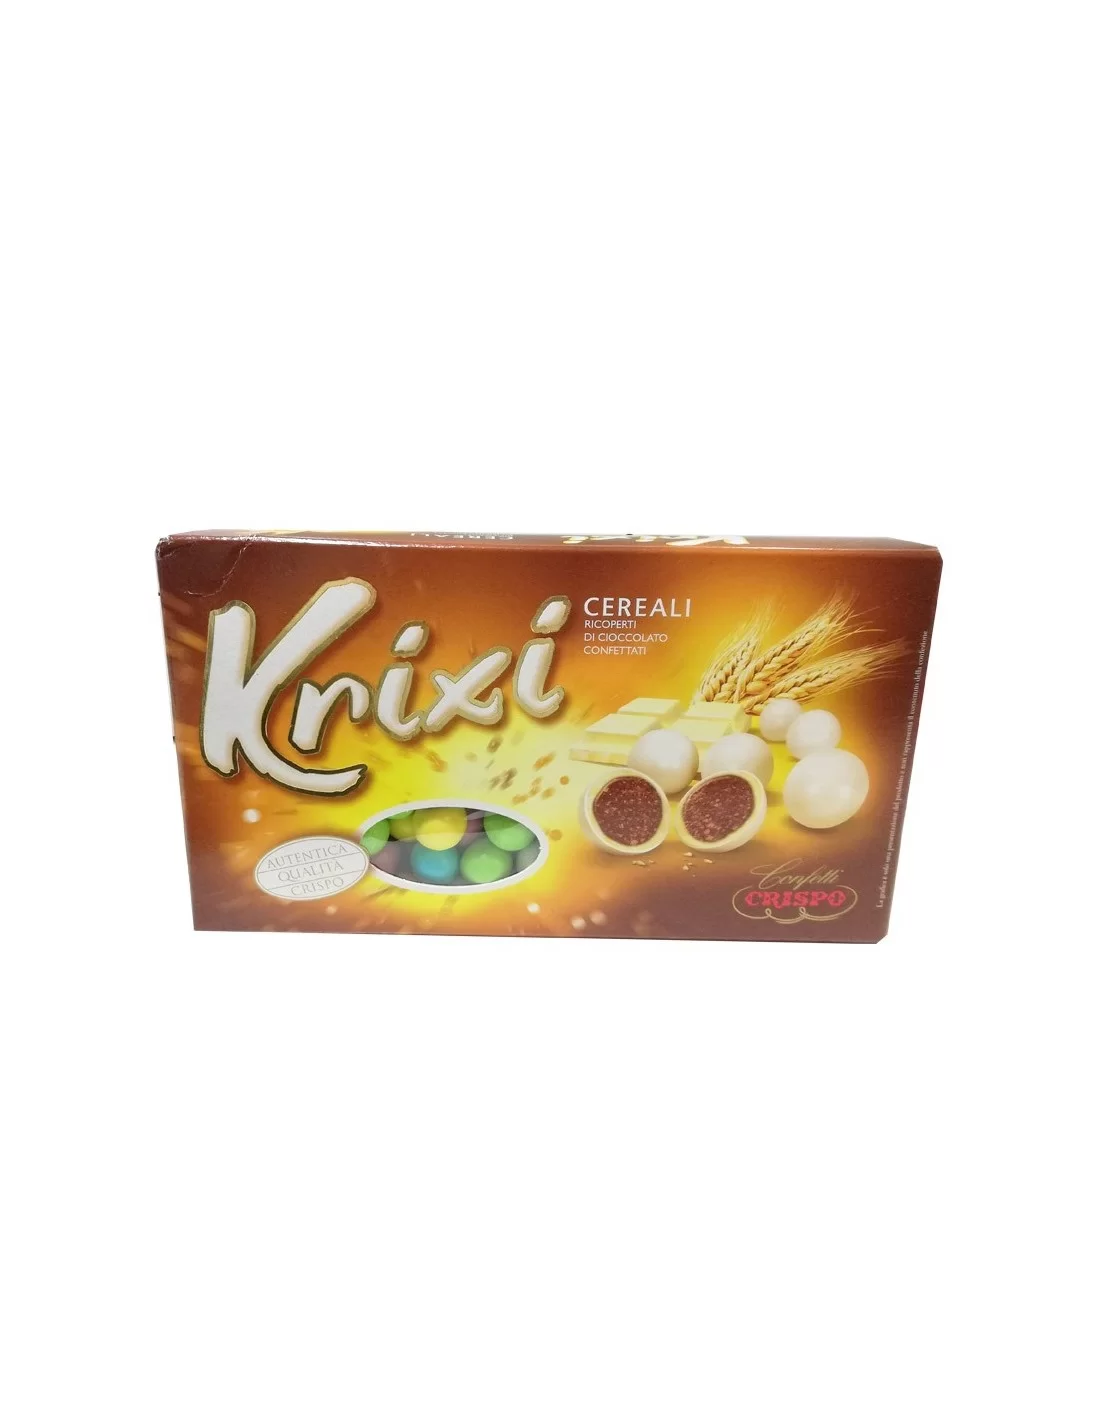 Confetti Crispo - Krixi - Cereali Ricoperti Cioccolato Bianco - Colorati -  900 gr - Crispo 